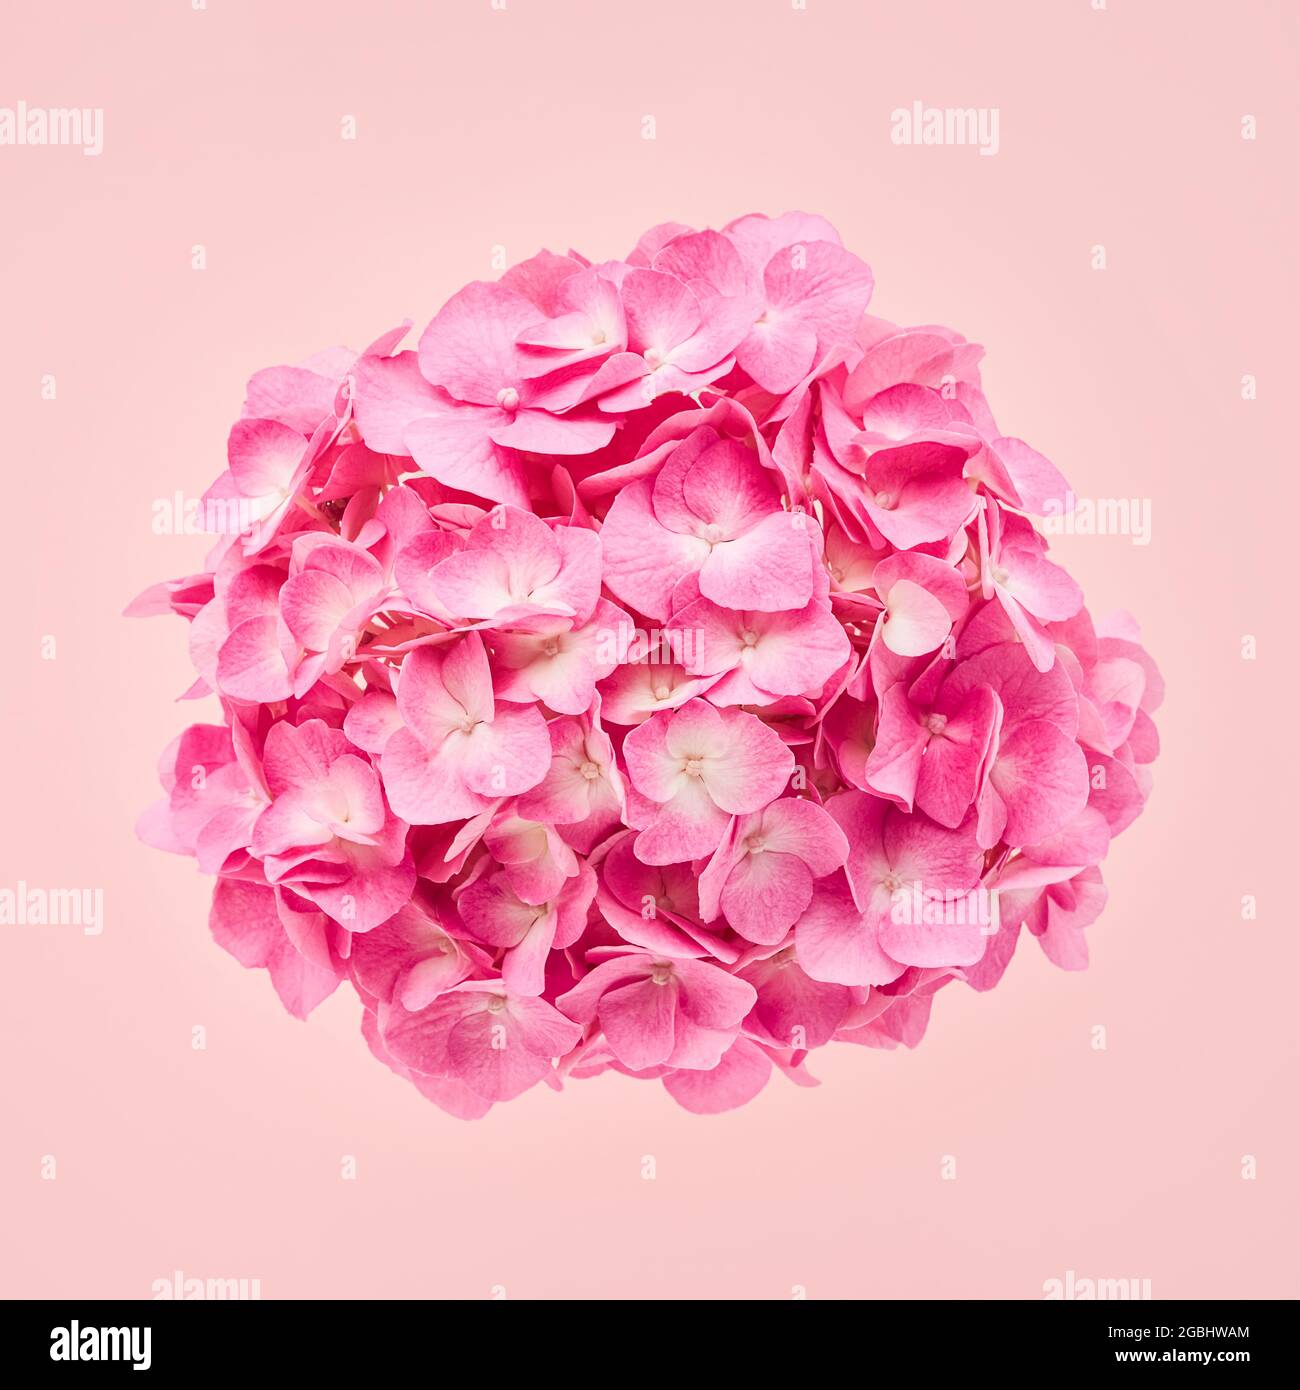 hortensia rose ou fleur d'hortensia sur fond rose. Fête des mères, Saint-Valentin, Bachelorette, concept d'été. Espace de copie, vue de dessus. Banque D'Images